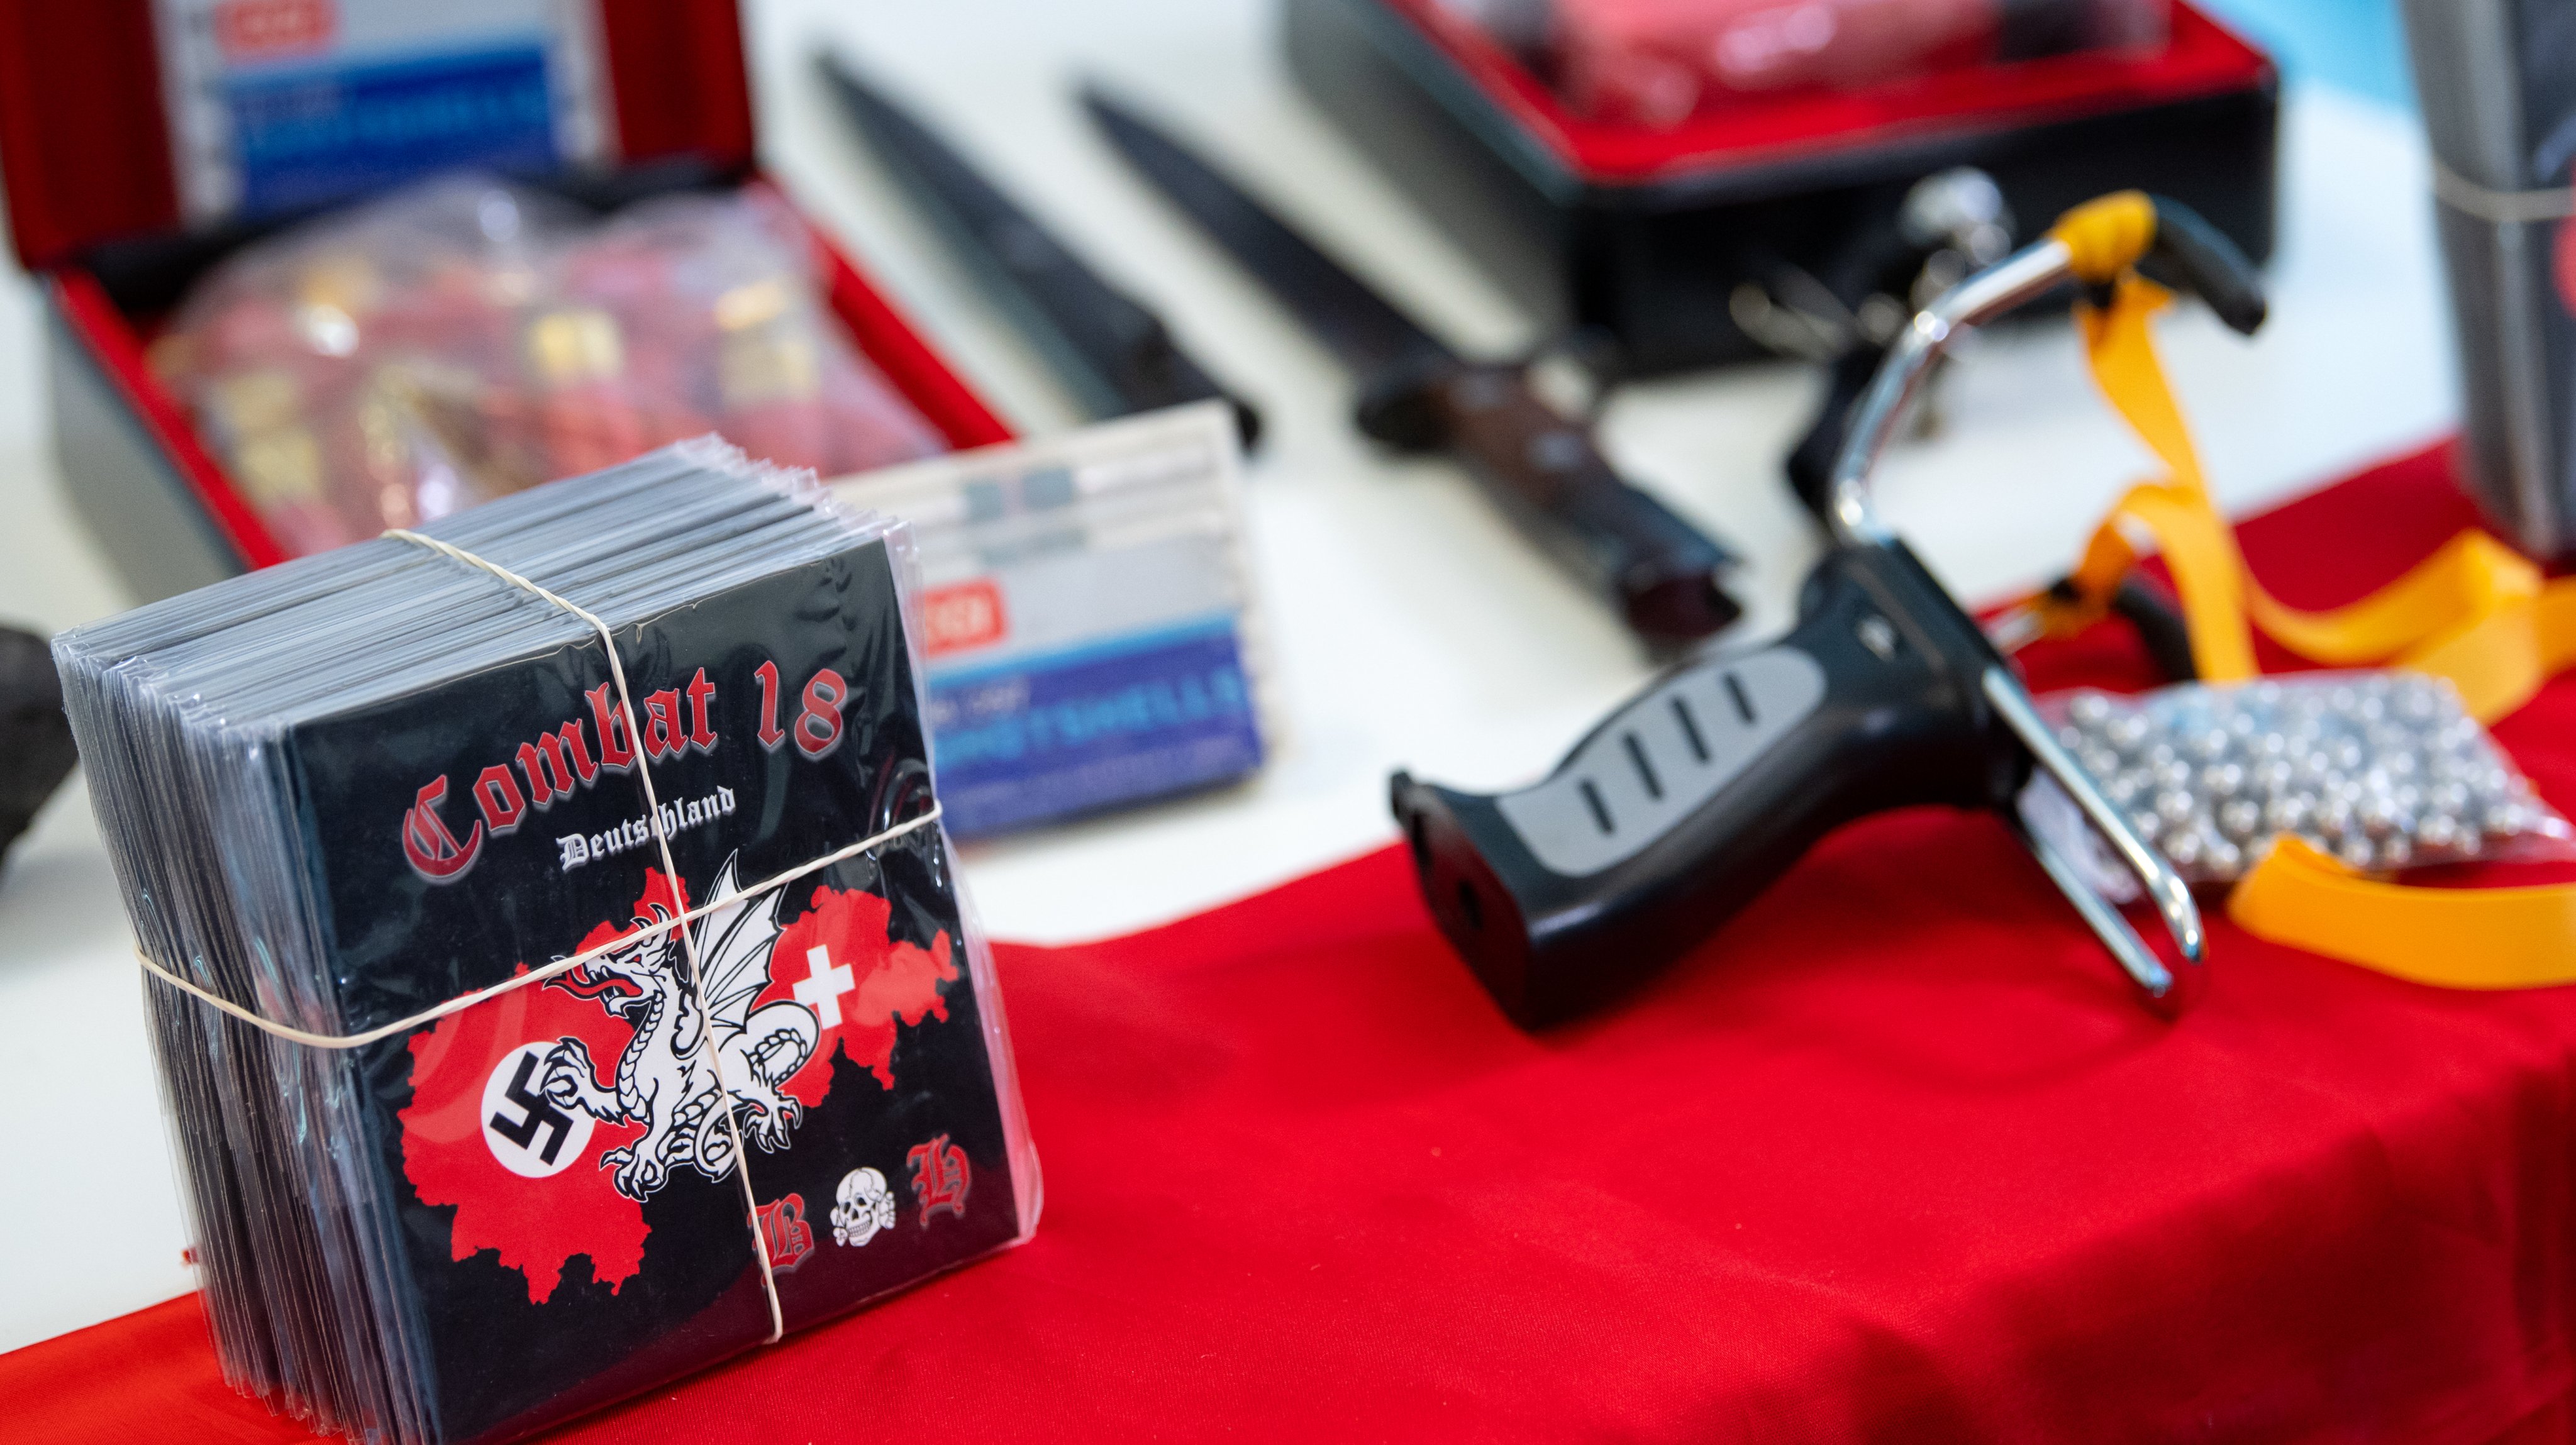 Armas, munições e CDs confiscados a membros de grupos de extrema-direita na Alemanha